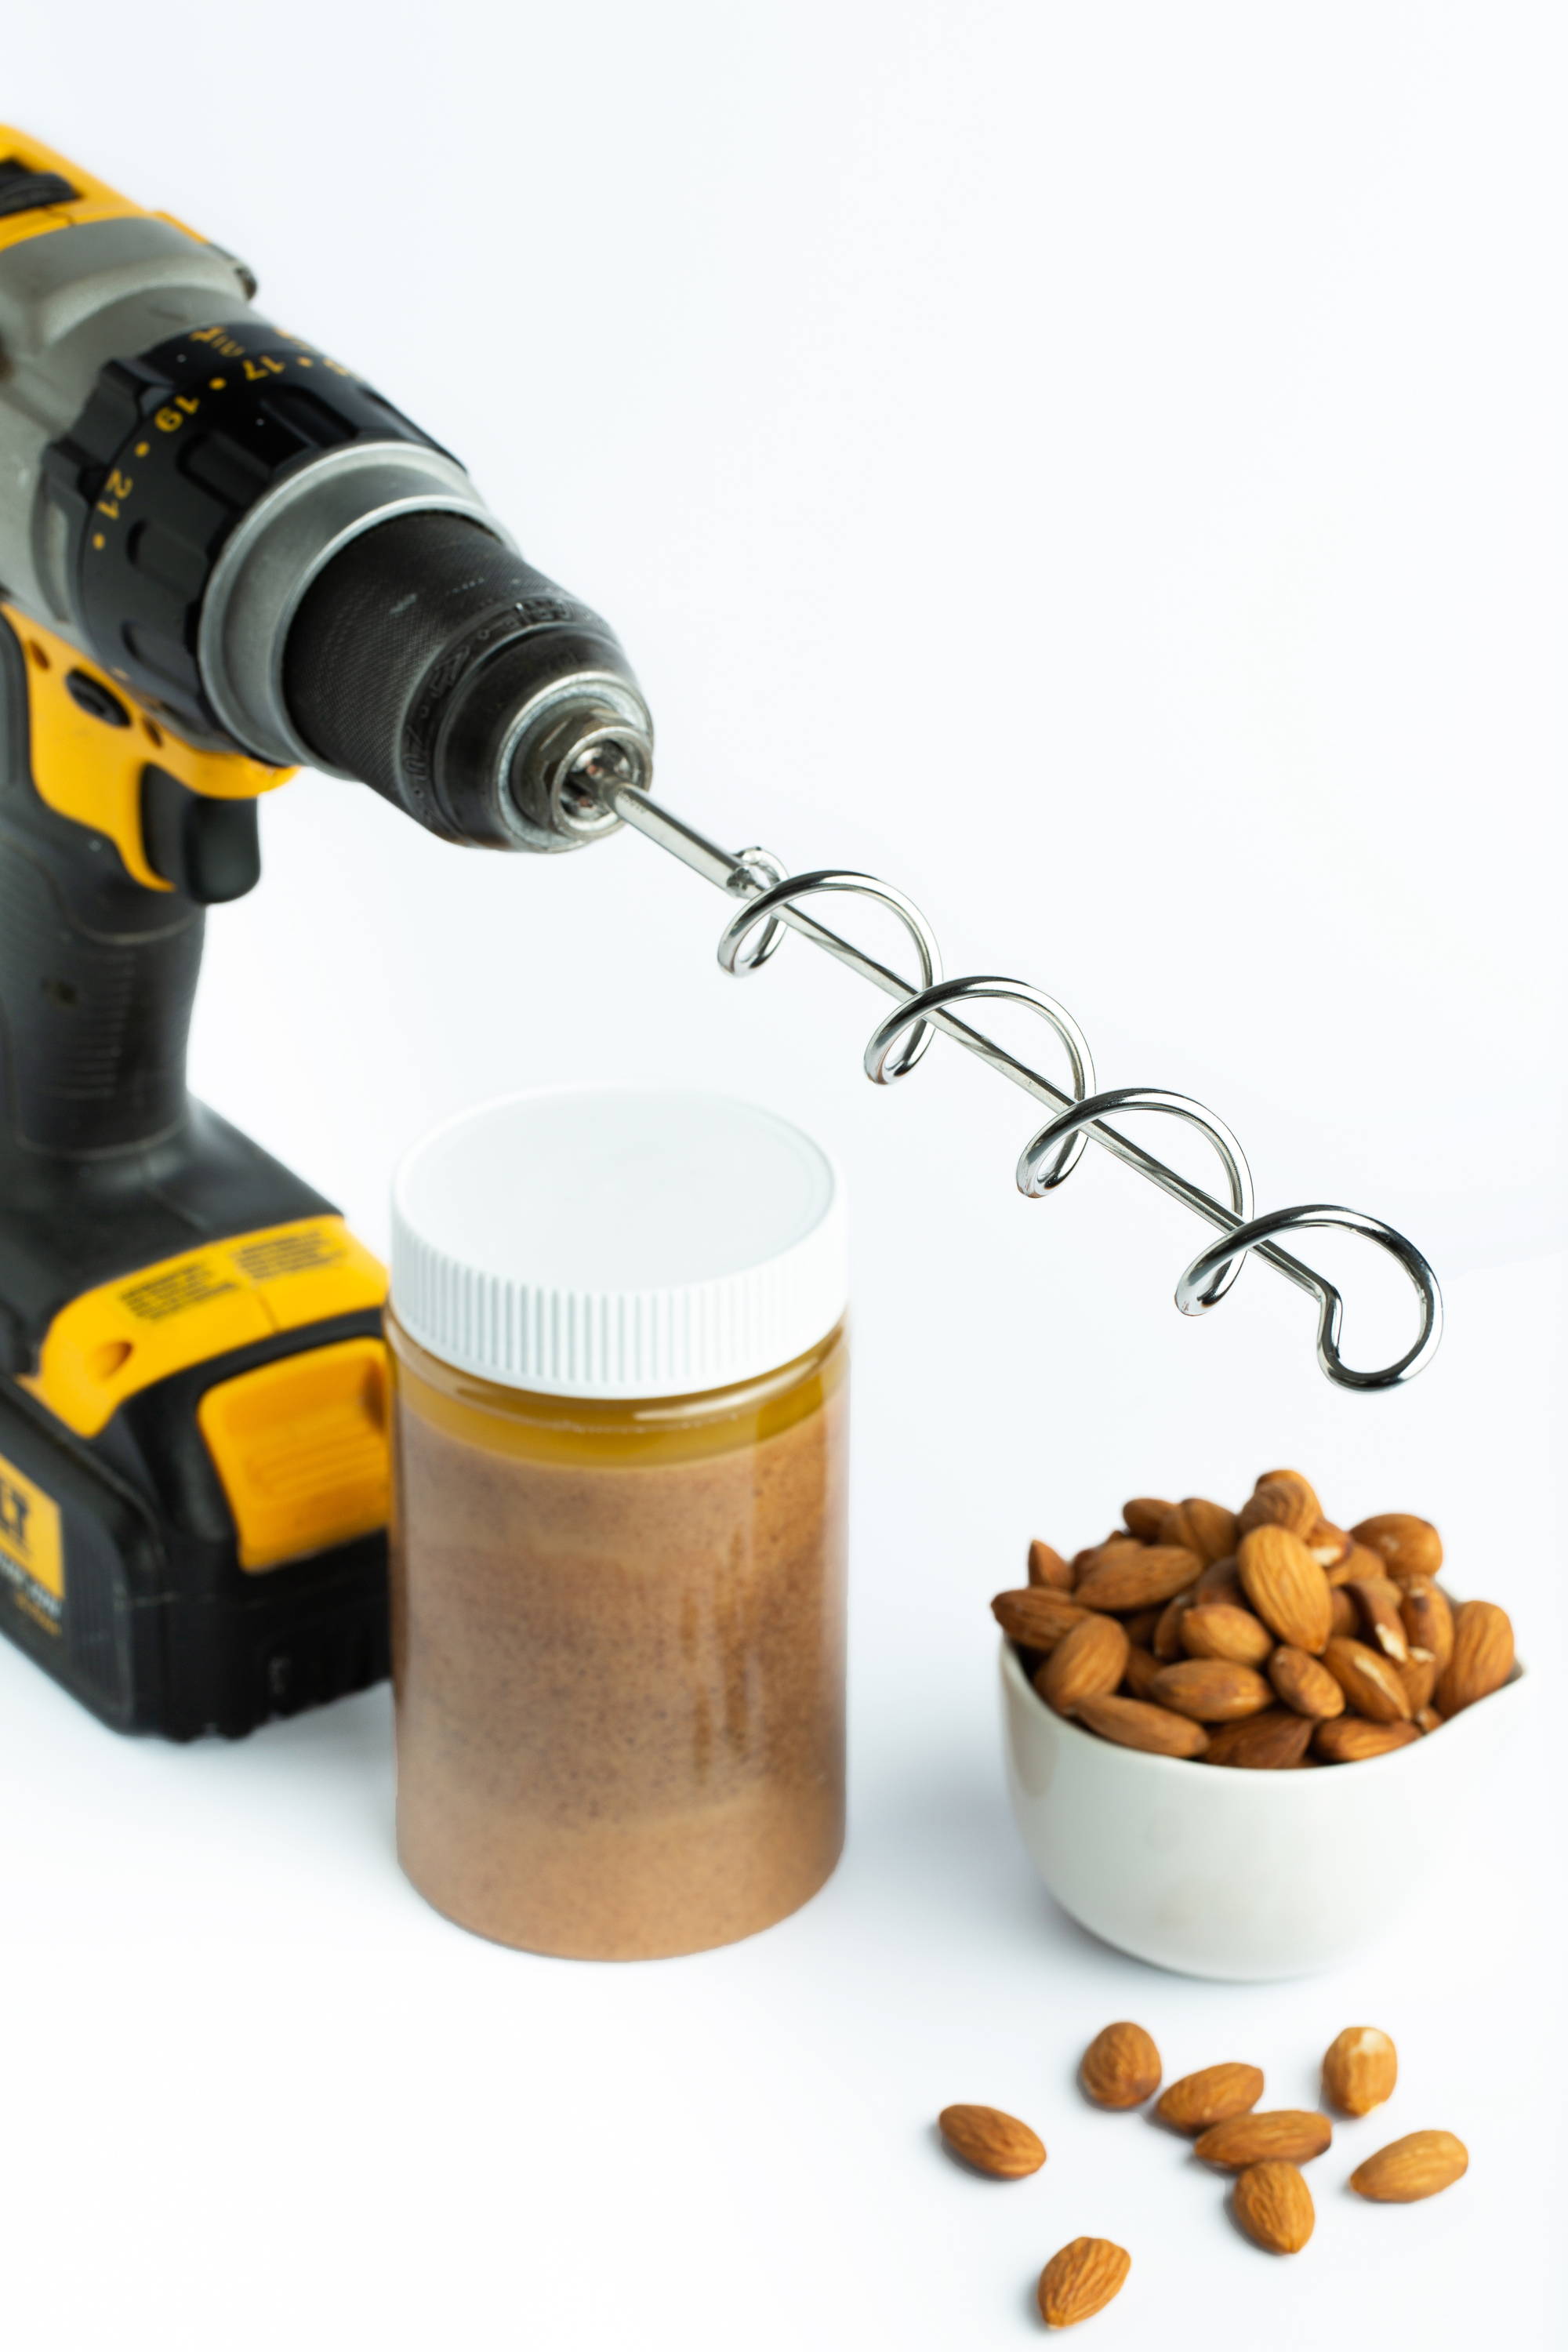 Nut Butter Mixer – The Nutbutter Mixer